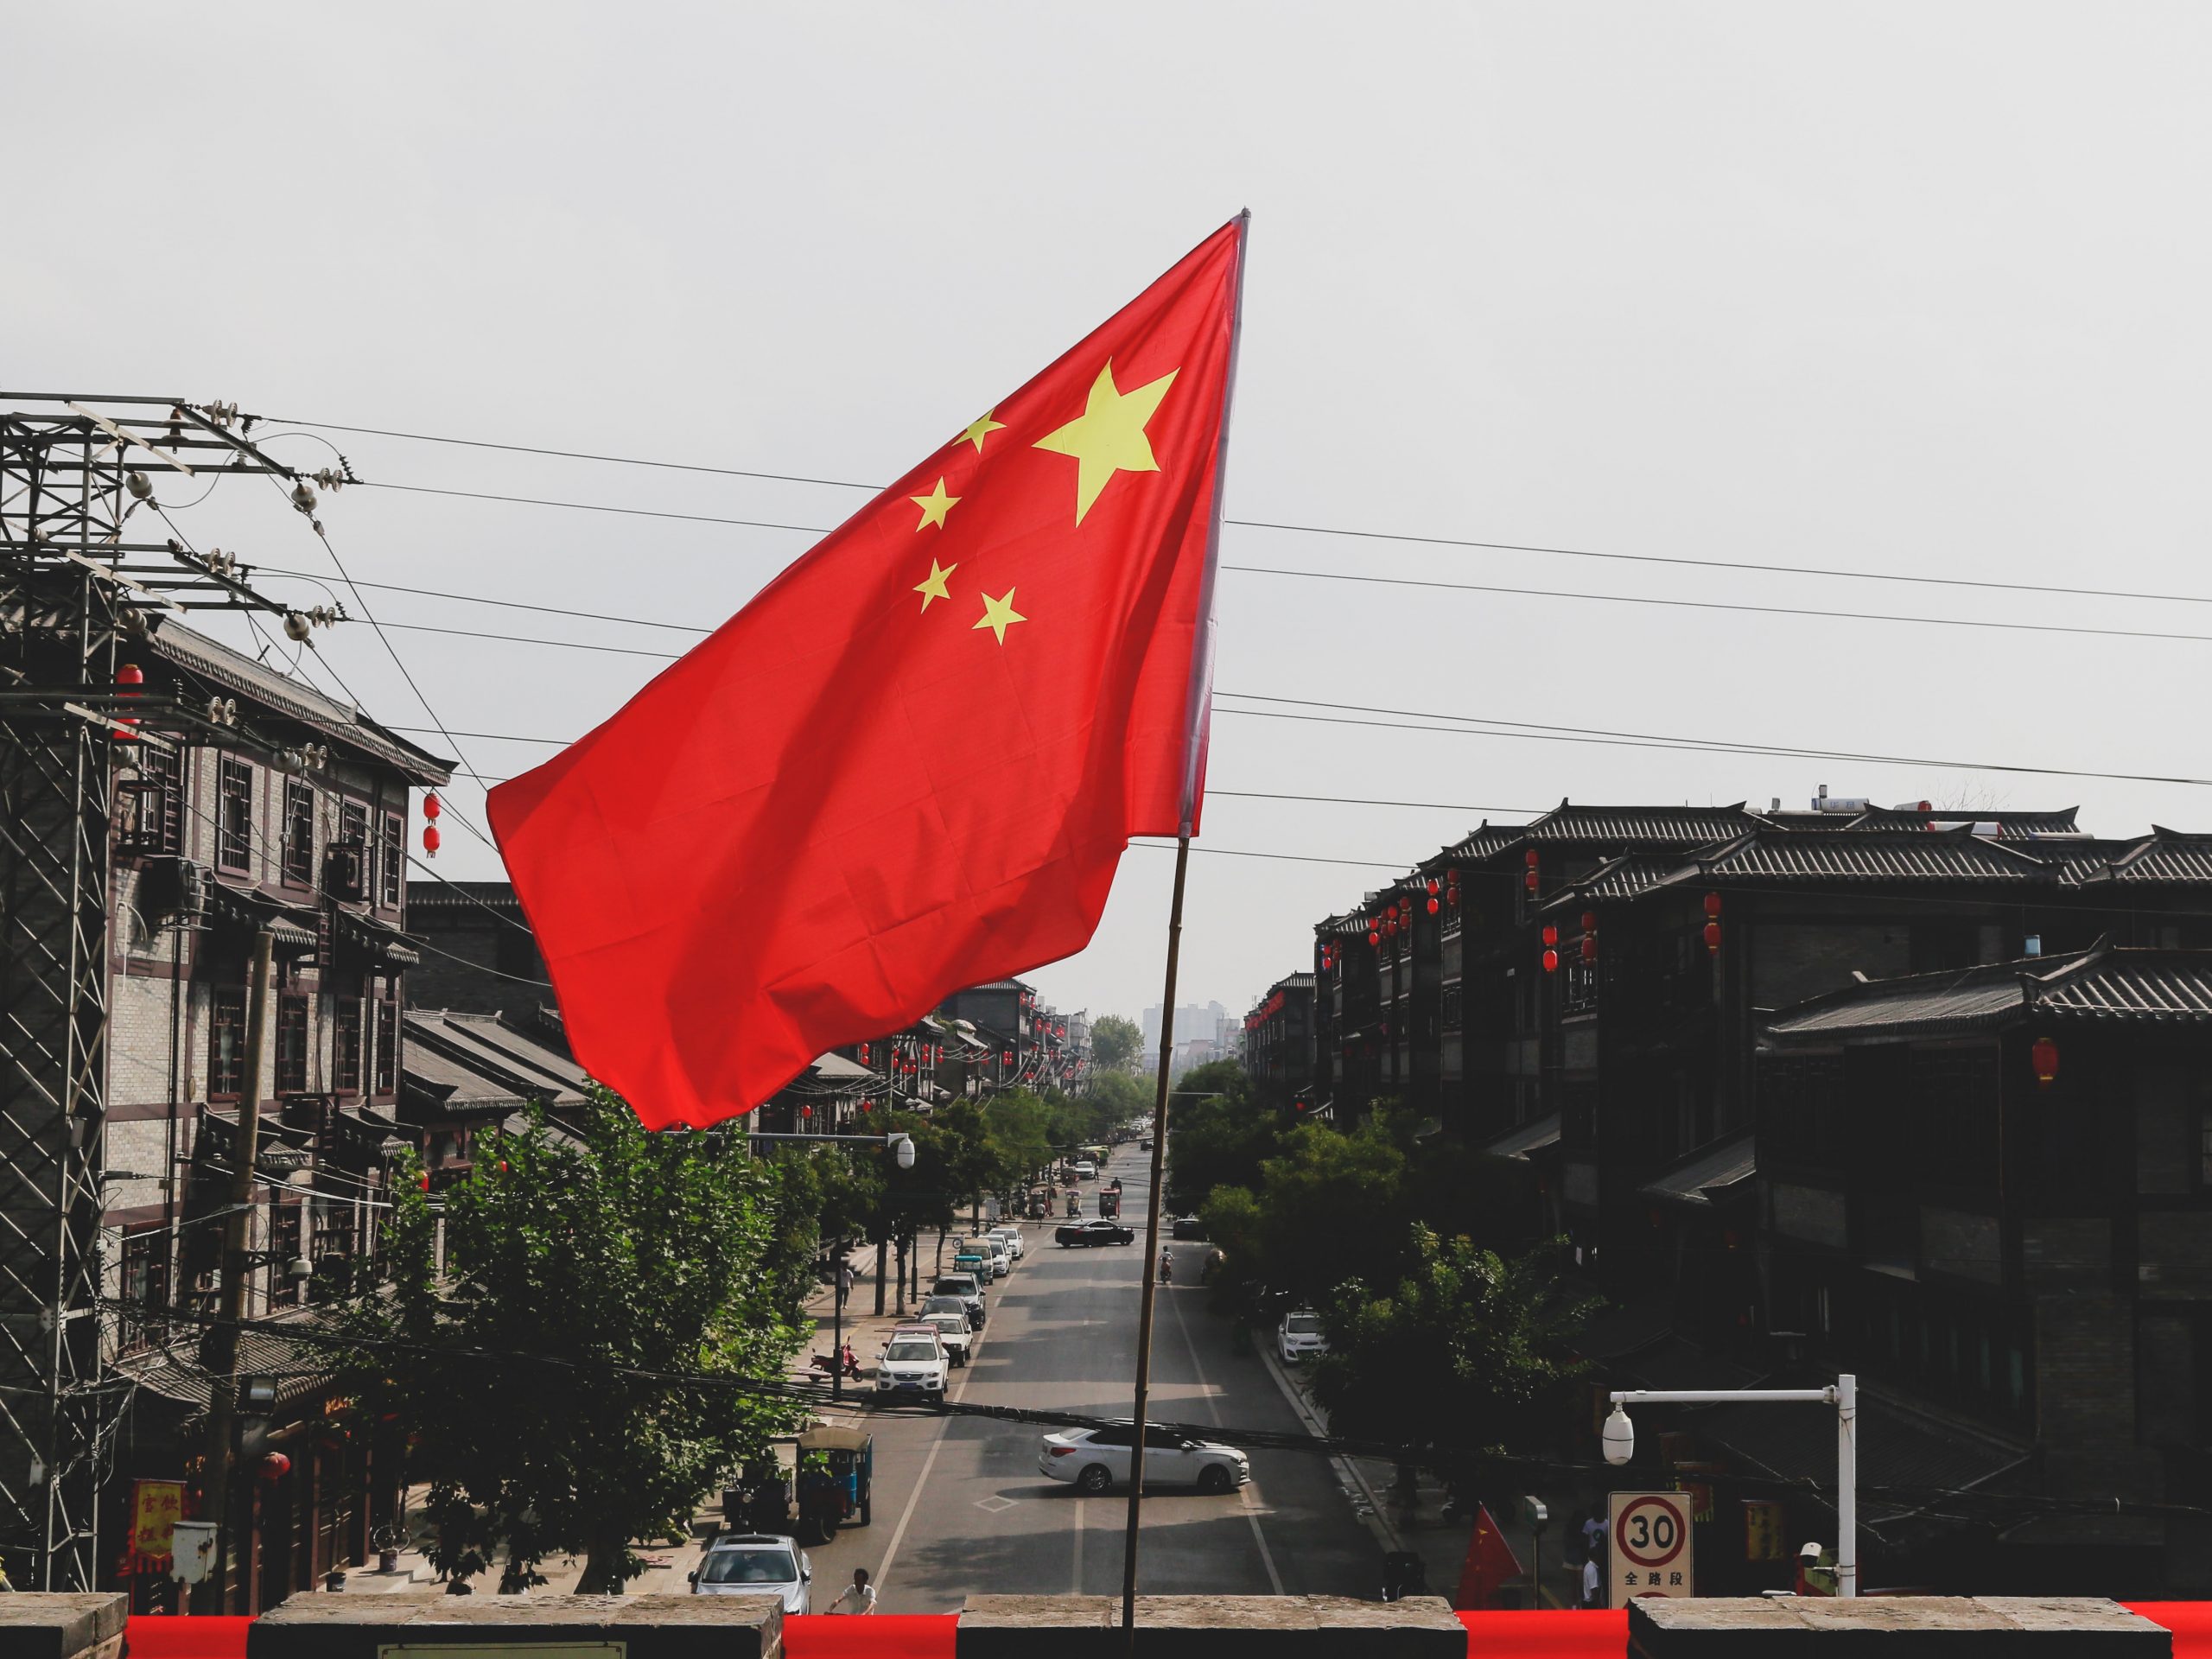 Produção de trabalho forçado de uigures na China entra na UE sem restrições, revela relatório